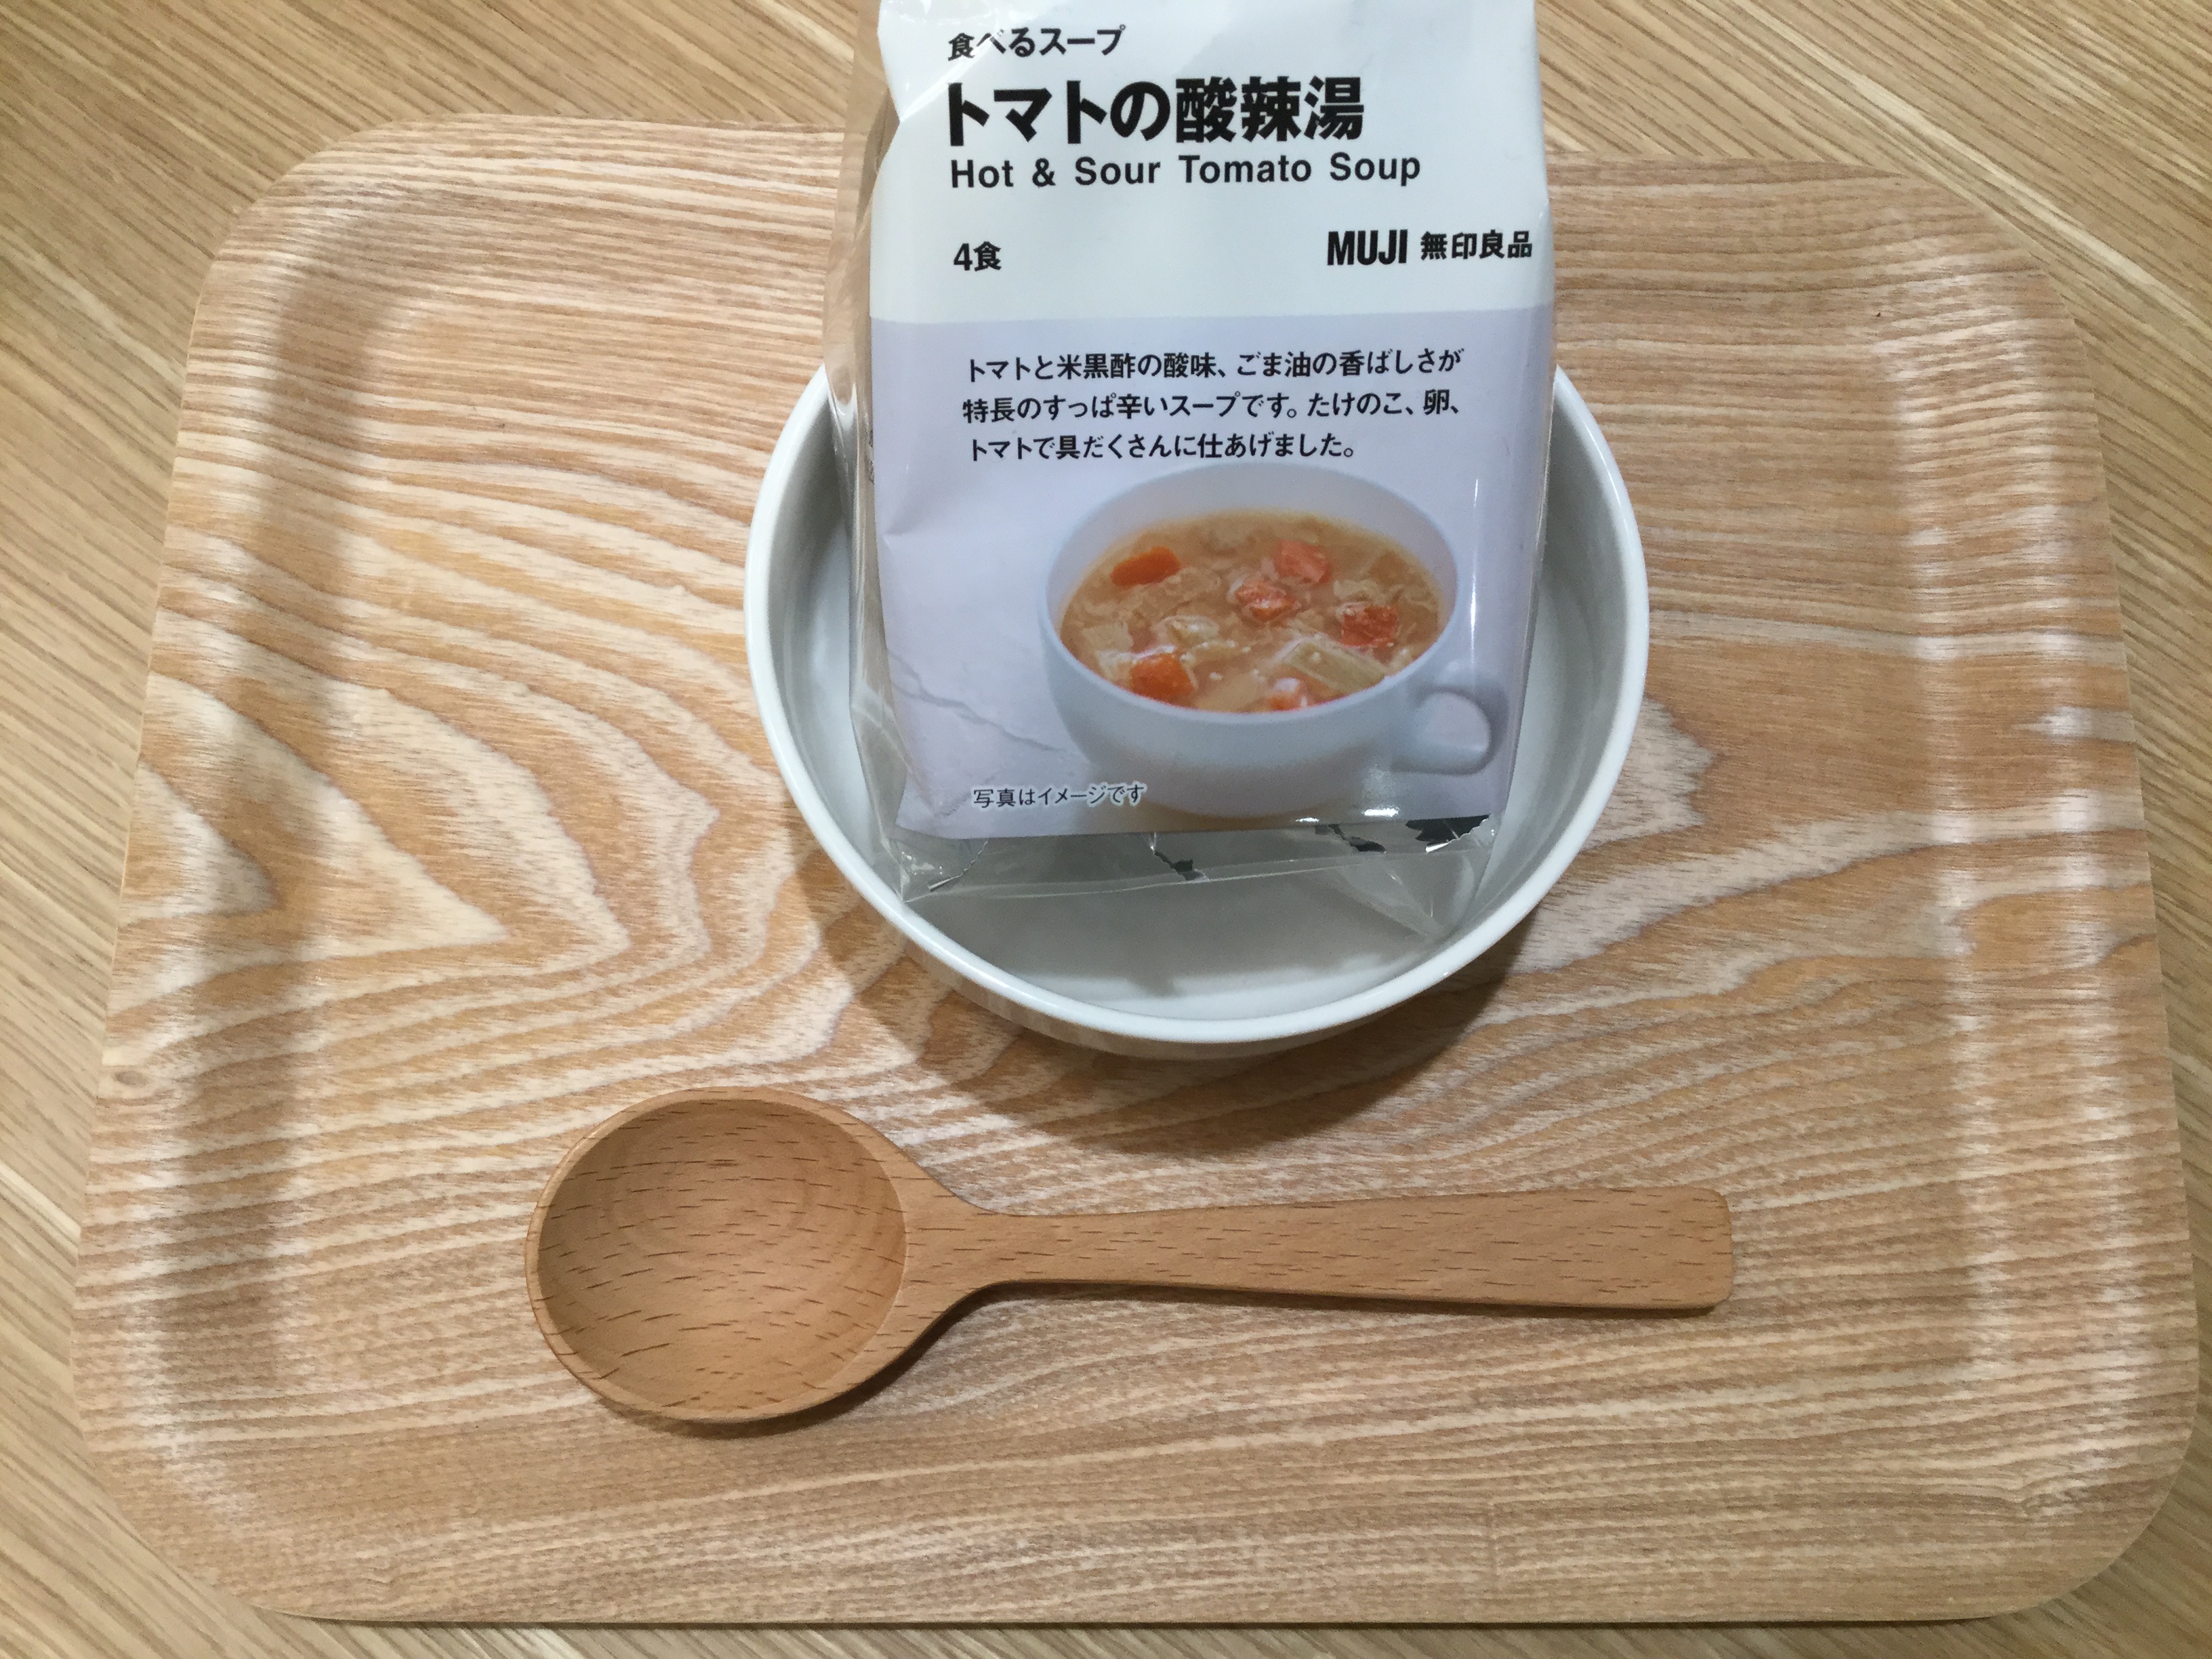 水戸エクセル 食べるスープ スタッフのおすすめランキング 無印良品